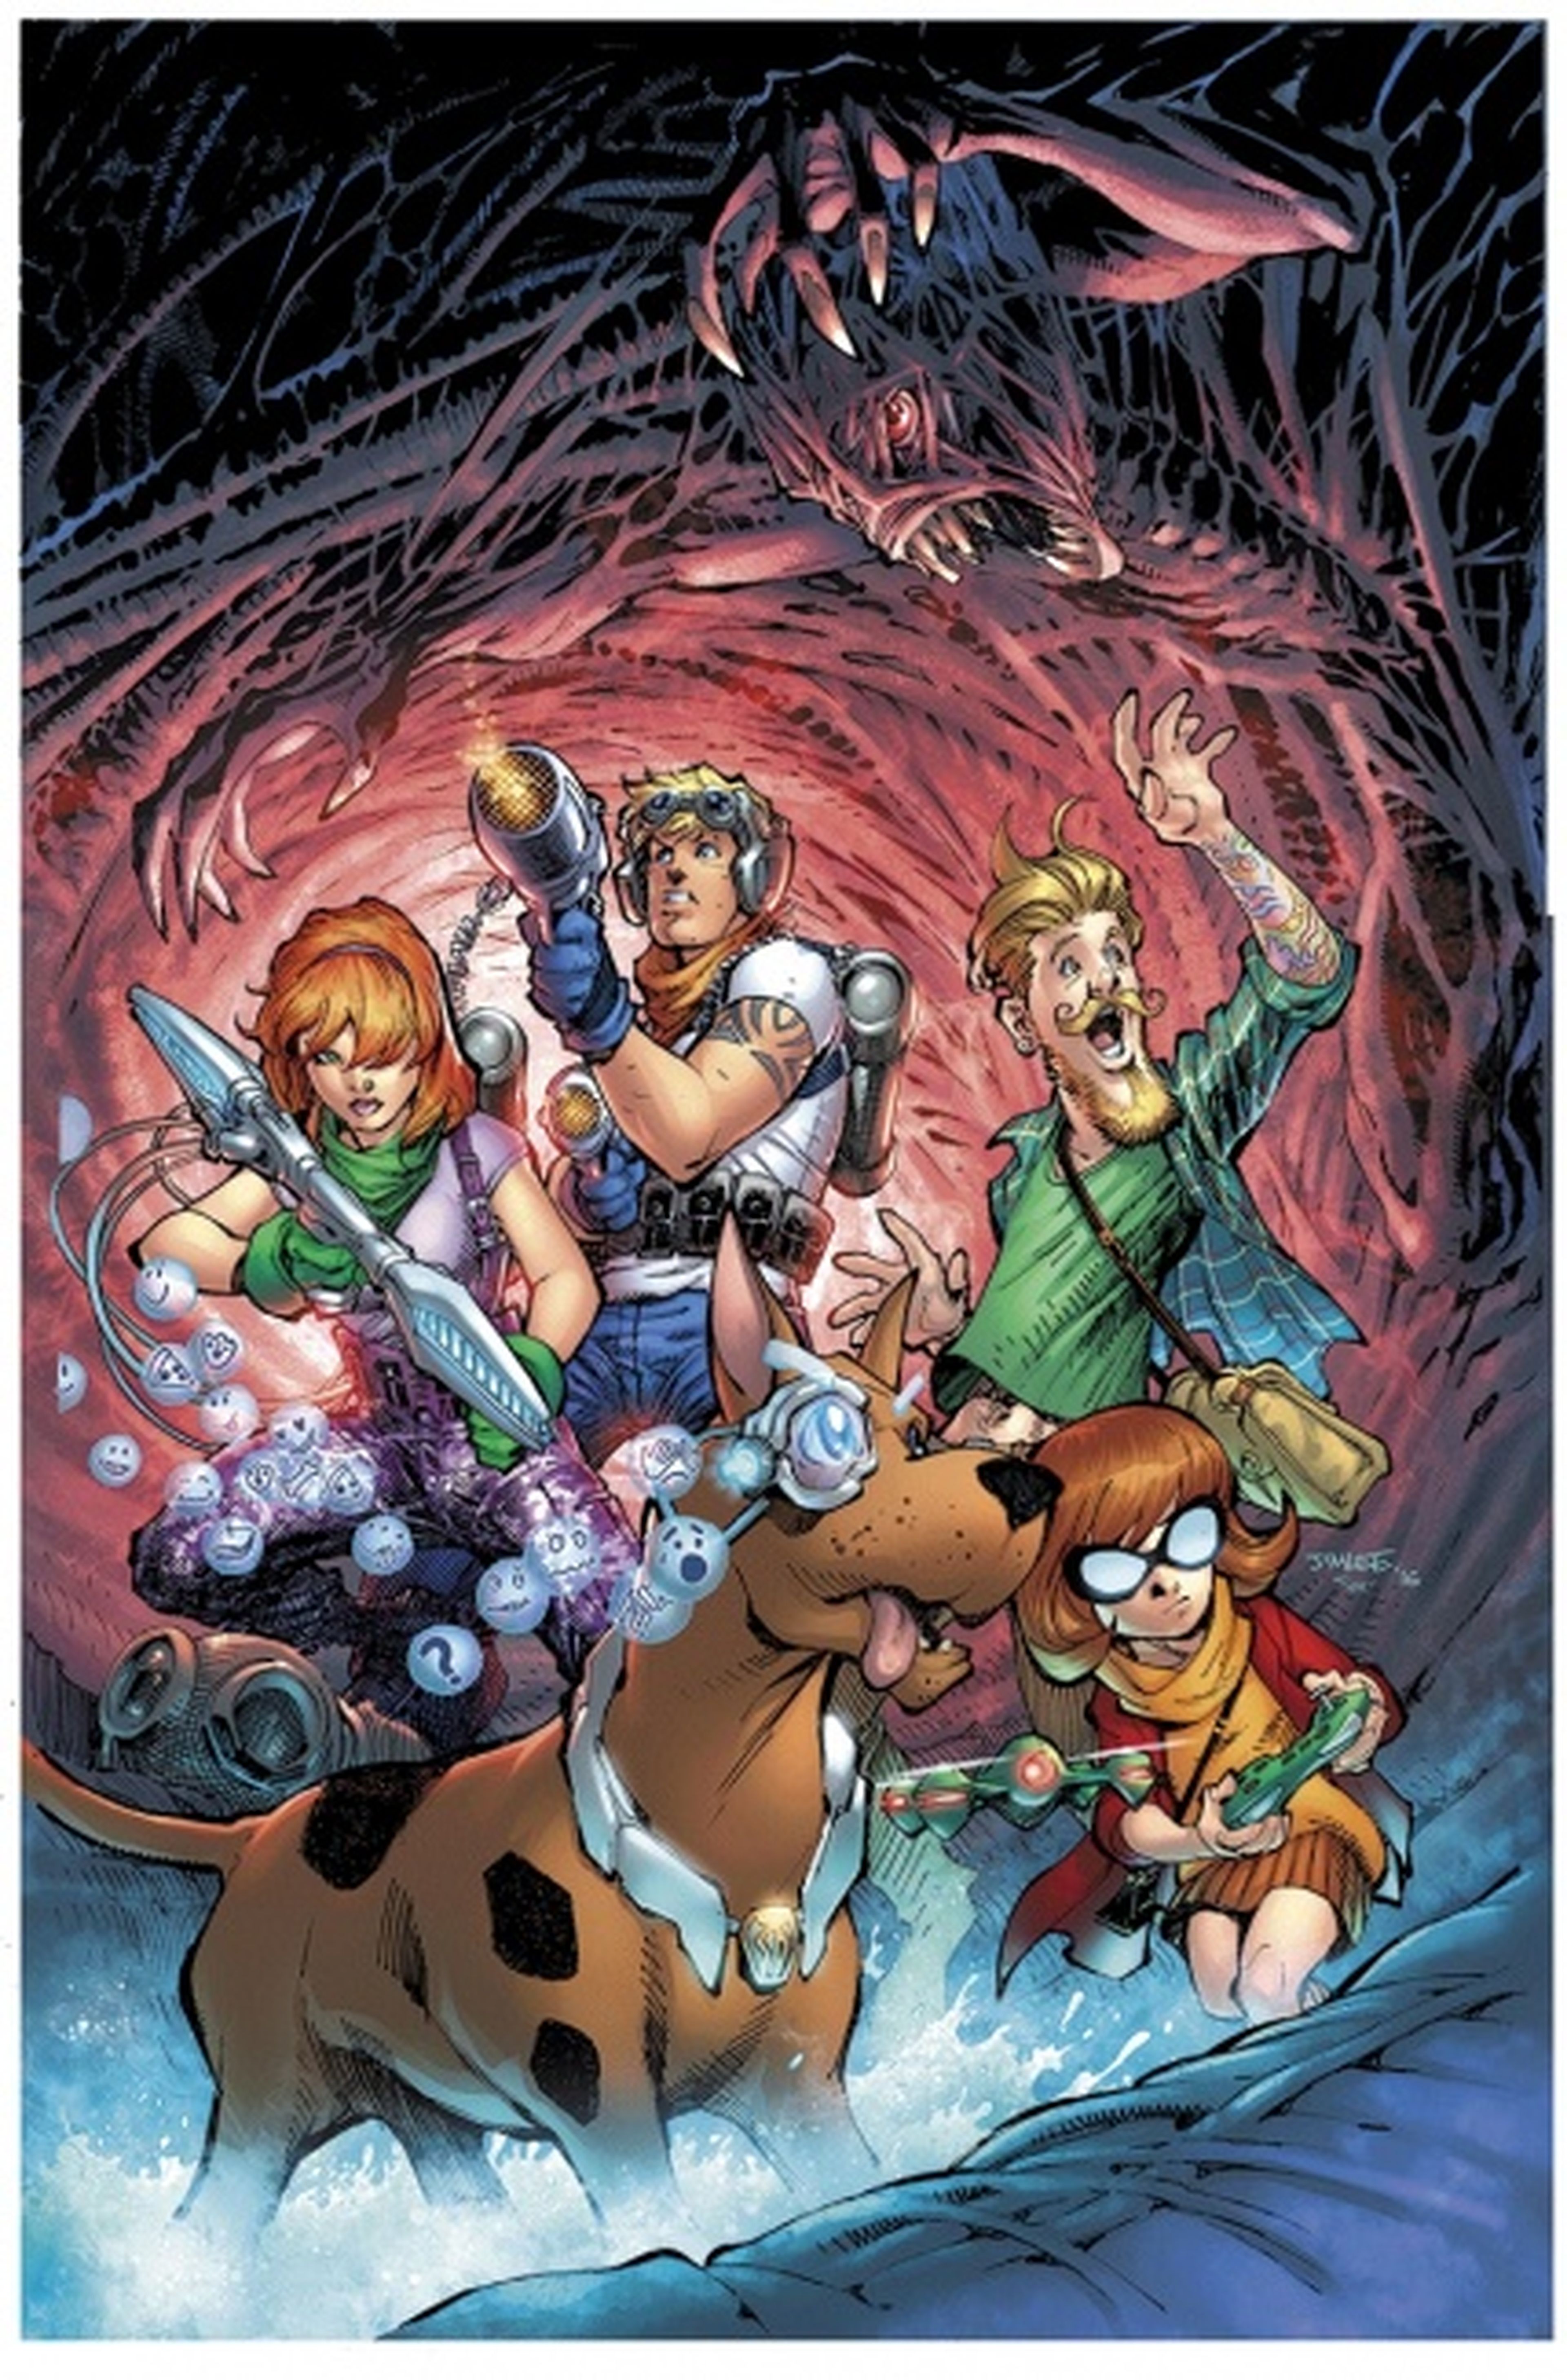 Scooby Apocalypse #1 - Review del reboot én cómic de Scooby Doo